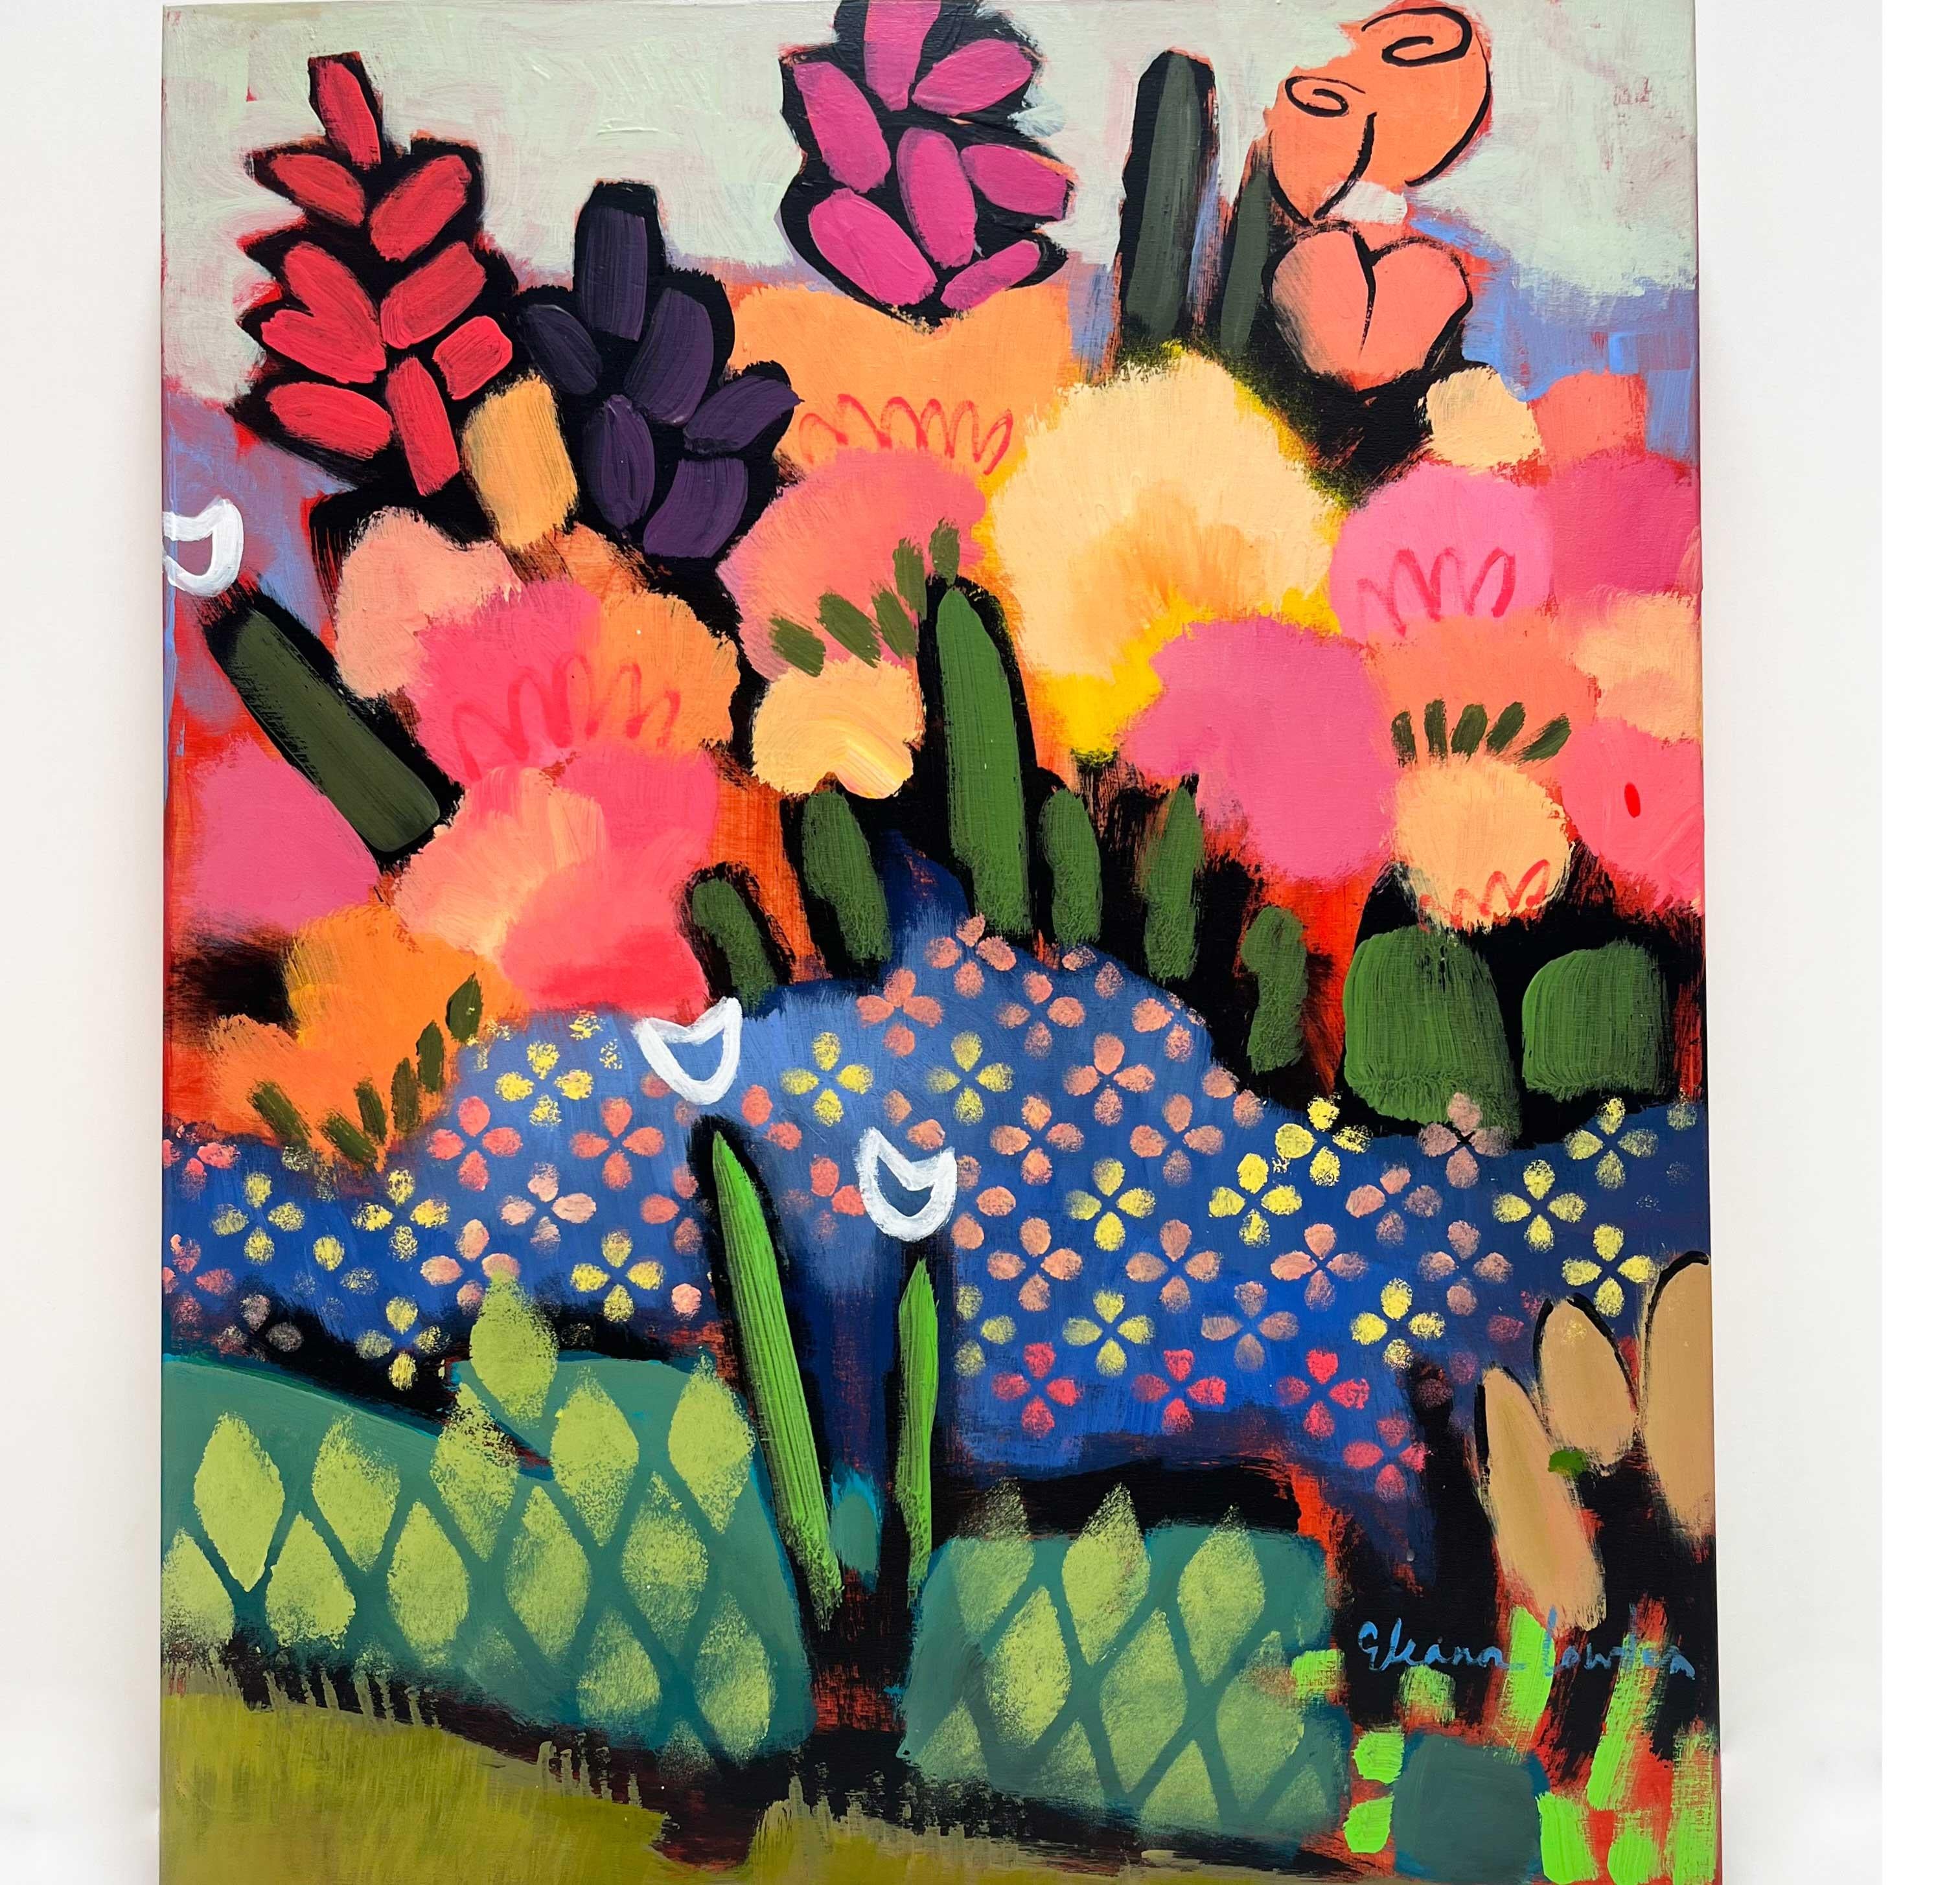 Eleanor Lowden Landscape Painting – Listen Up, farbenfrohe Blumen mit Rosa und Grüntönen, lebendige Gartenlandschaft